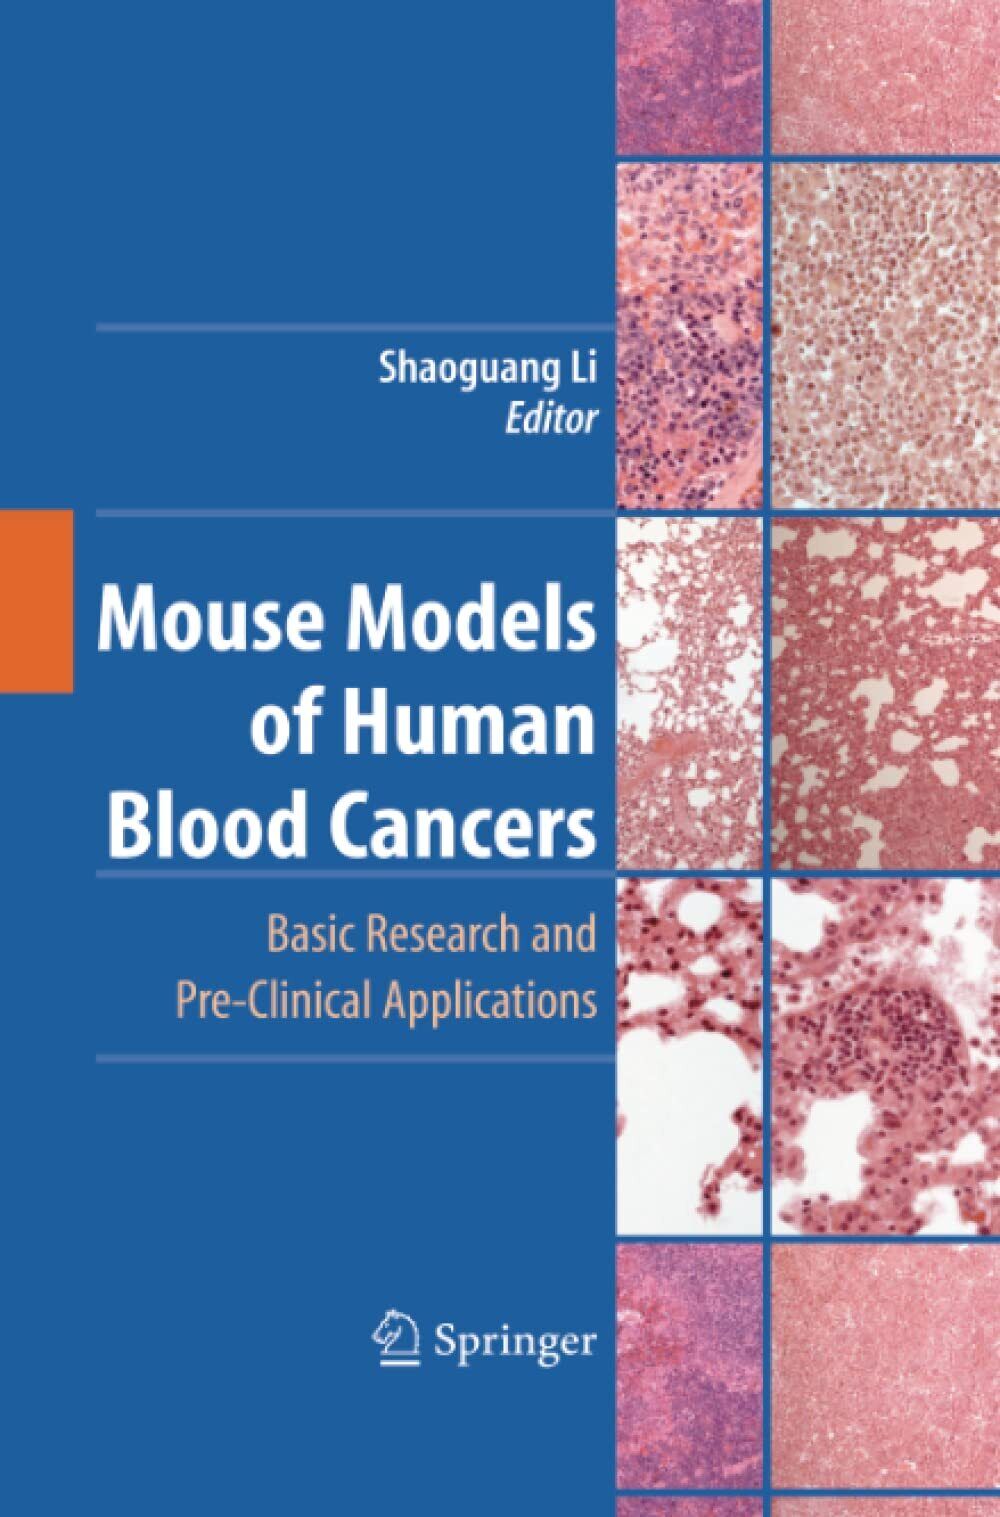 Mouse Models of Human Blood Cancers - Shaoguang Li - Springer, 2014